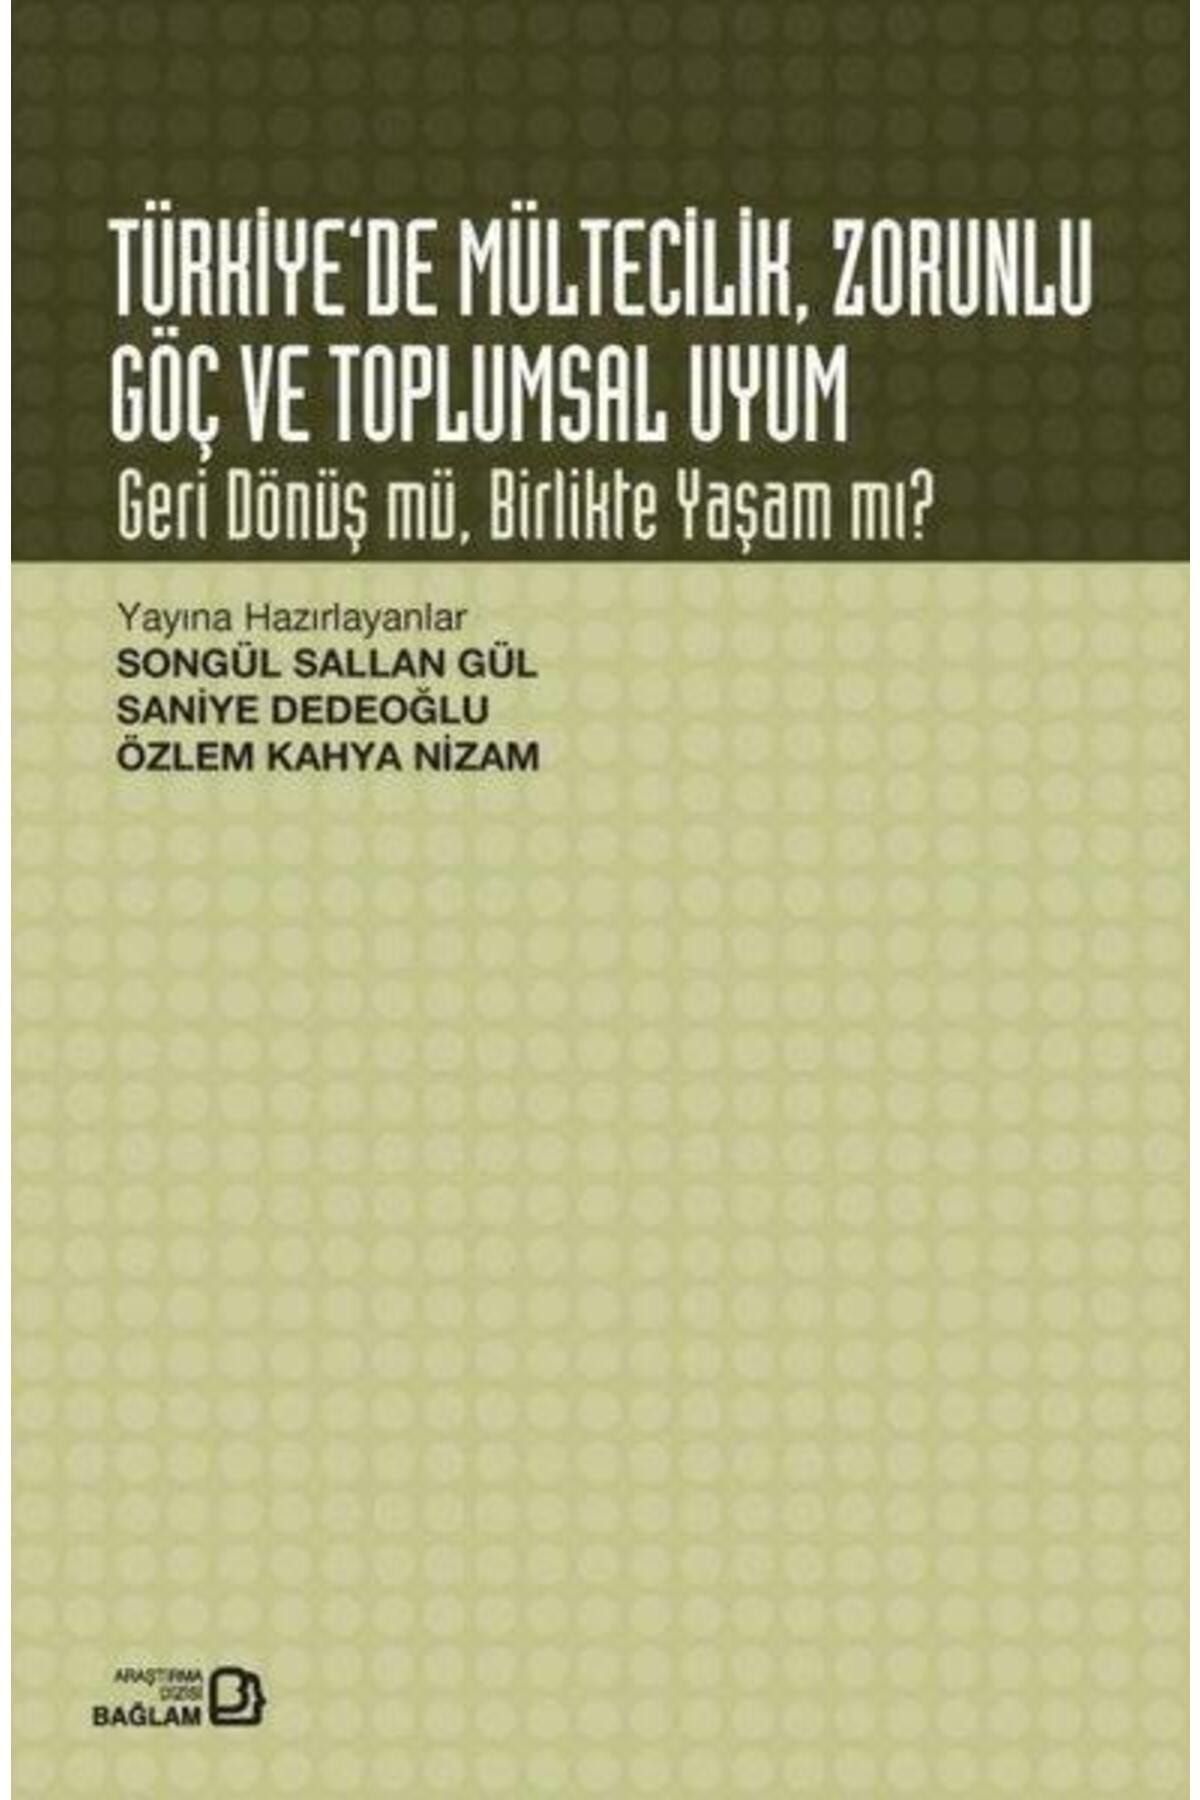 Bağlam Yayıncılık Türkiyede Mültecilik Zorunlu Göç ve Toplumsal Uyum Geri Dönüş mü Birlikte Yaşam mı?